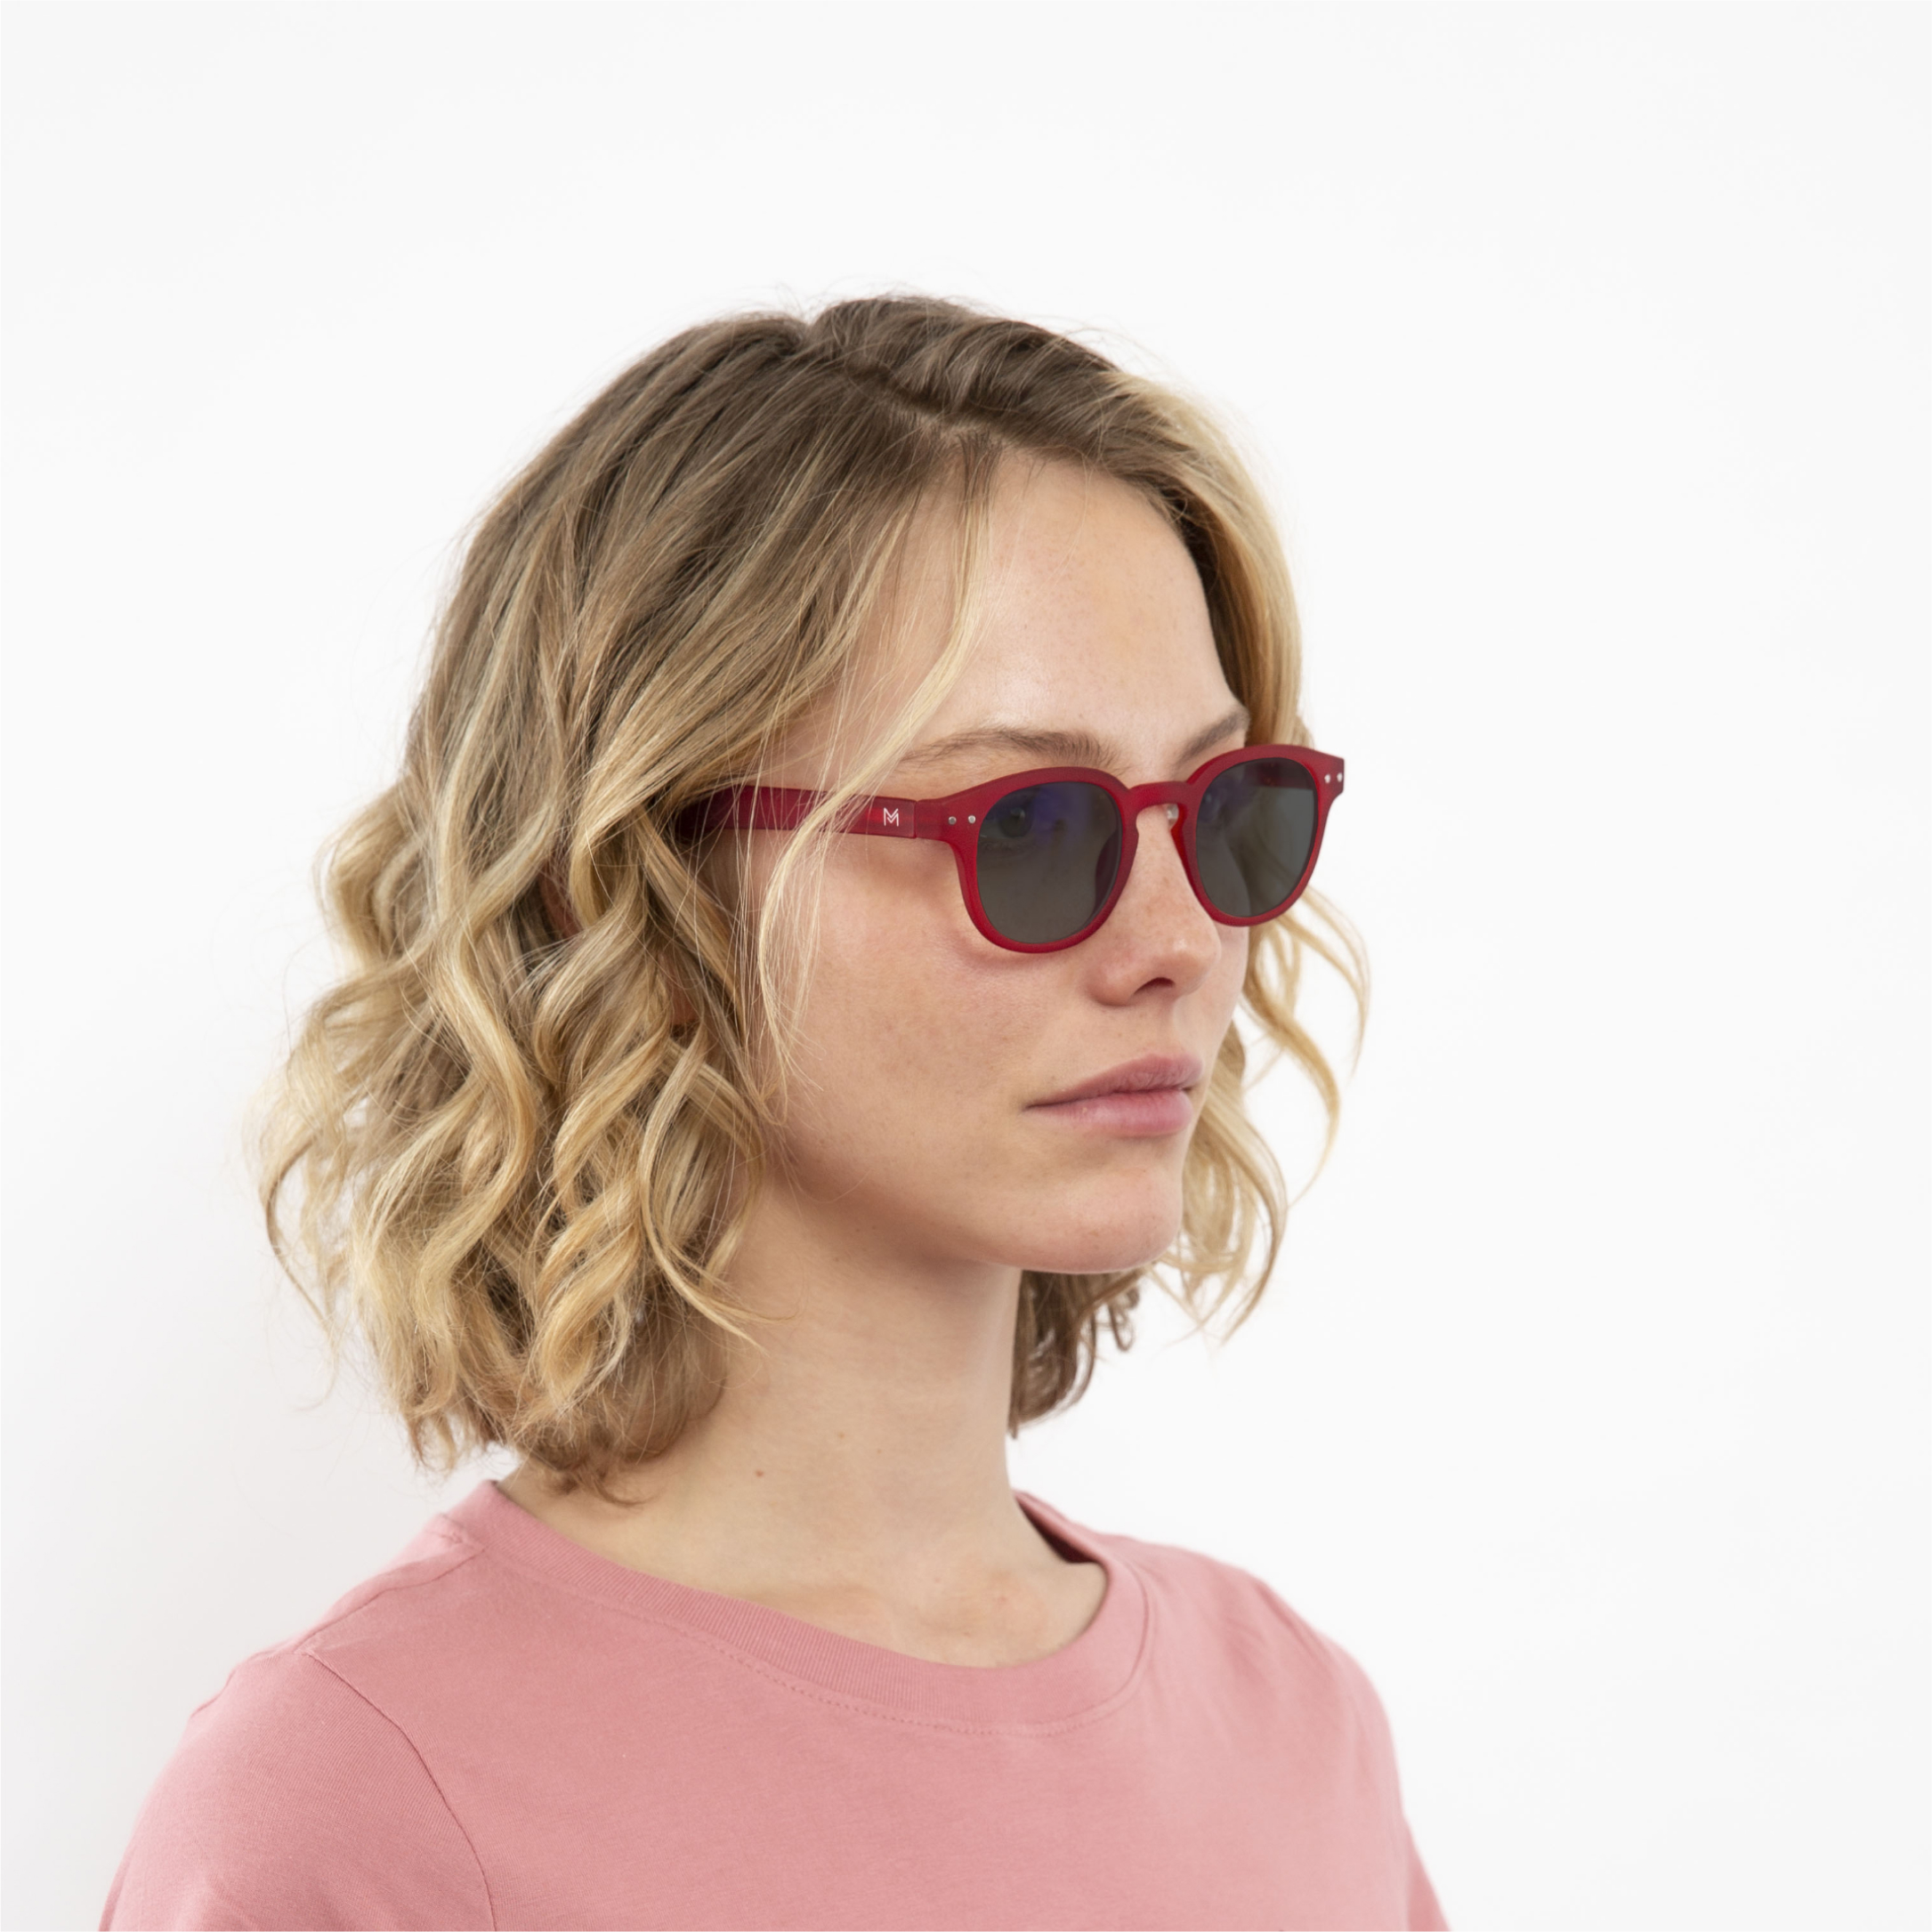 ochelari heliomati si tranzitie lentile gri femei anton rosie profil